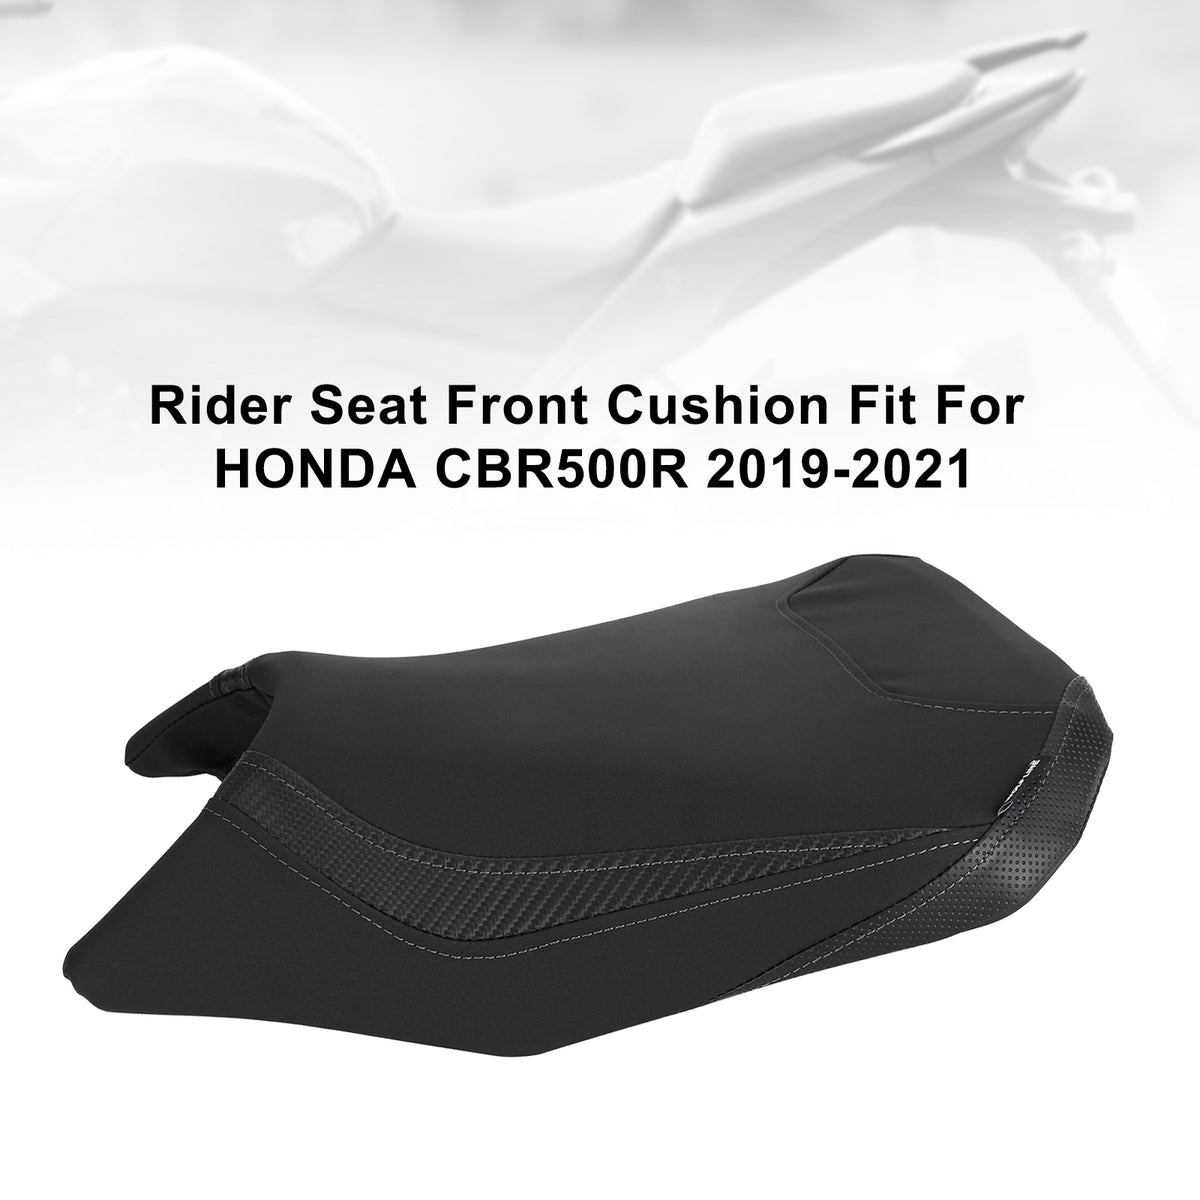 Ersetzen Sie den Fahrer- und Beifahrersitz vorne und hinten für Honda CBR500R CBR 500R 19-21